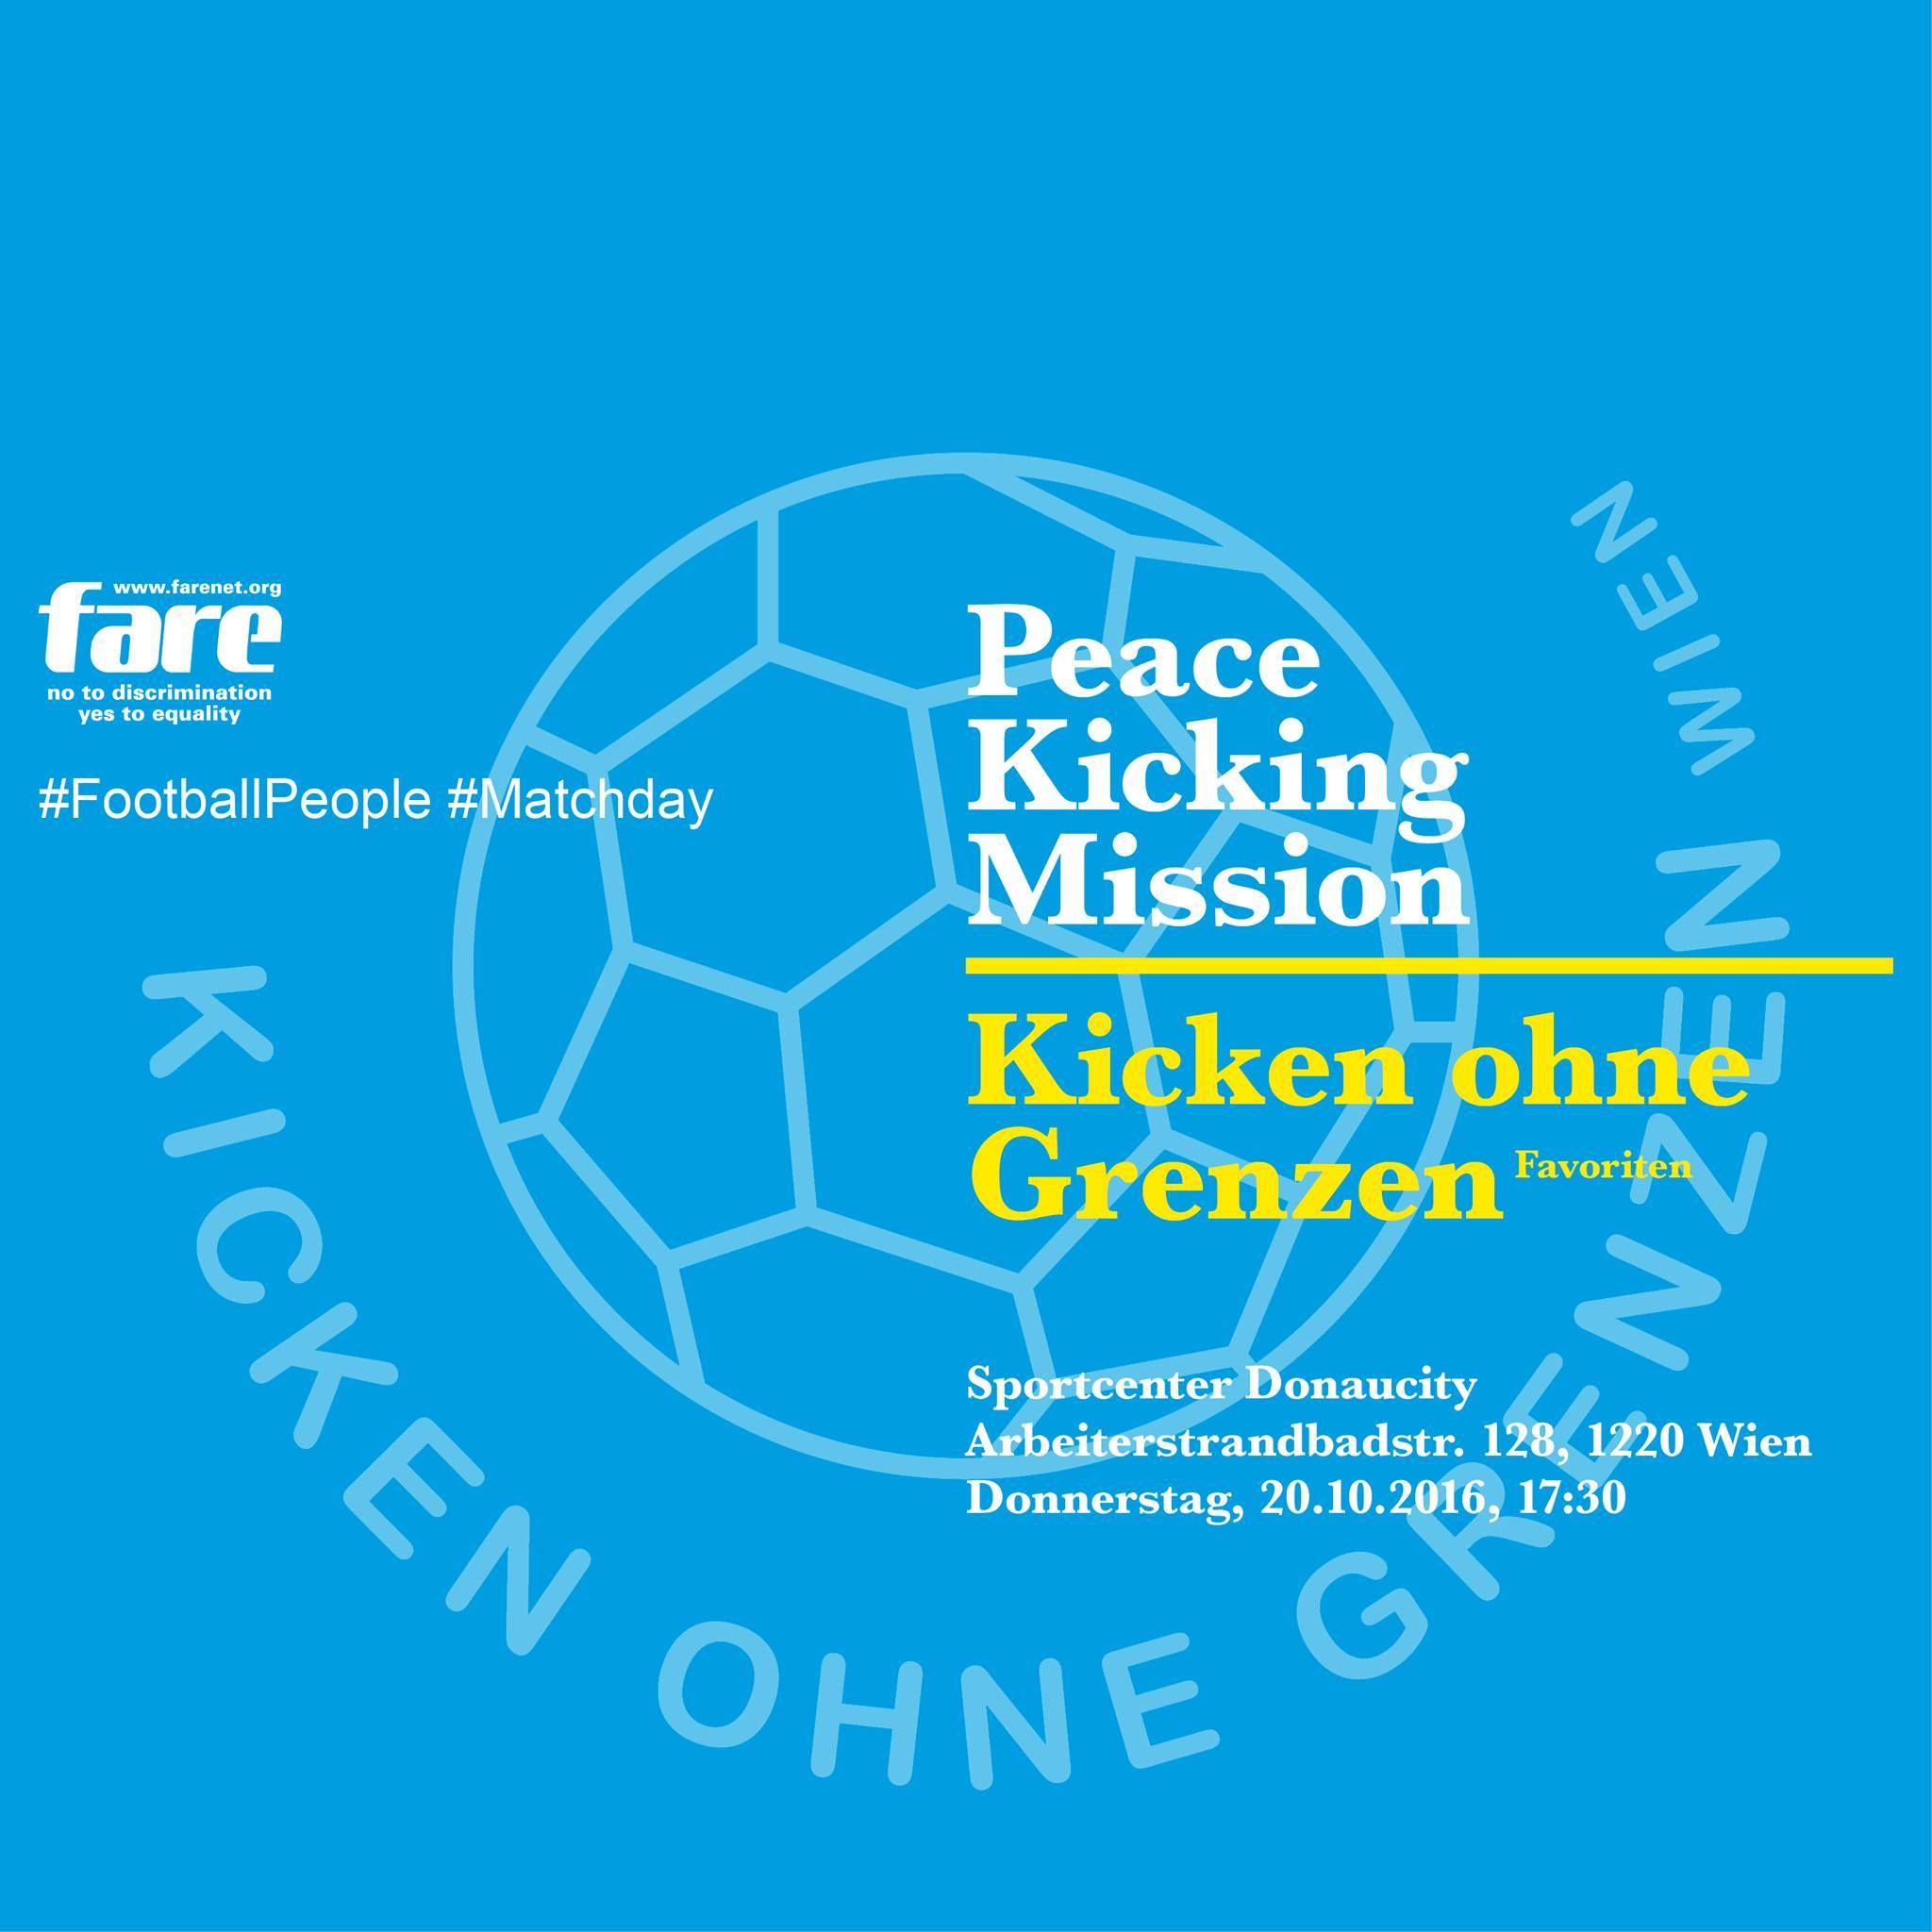 Peace Kicking Mission vs. Kicken ohne Grenzen / Team Favoriten